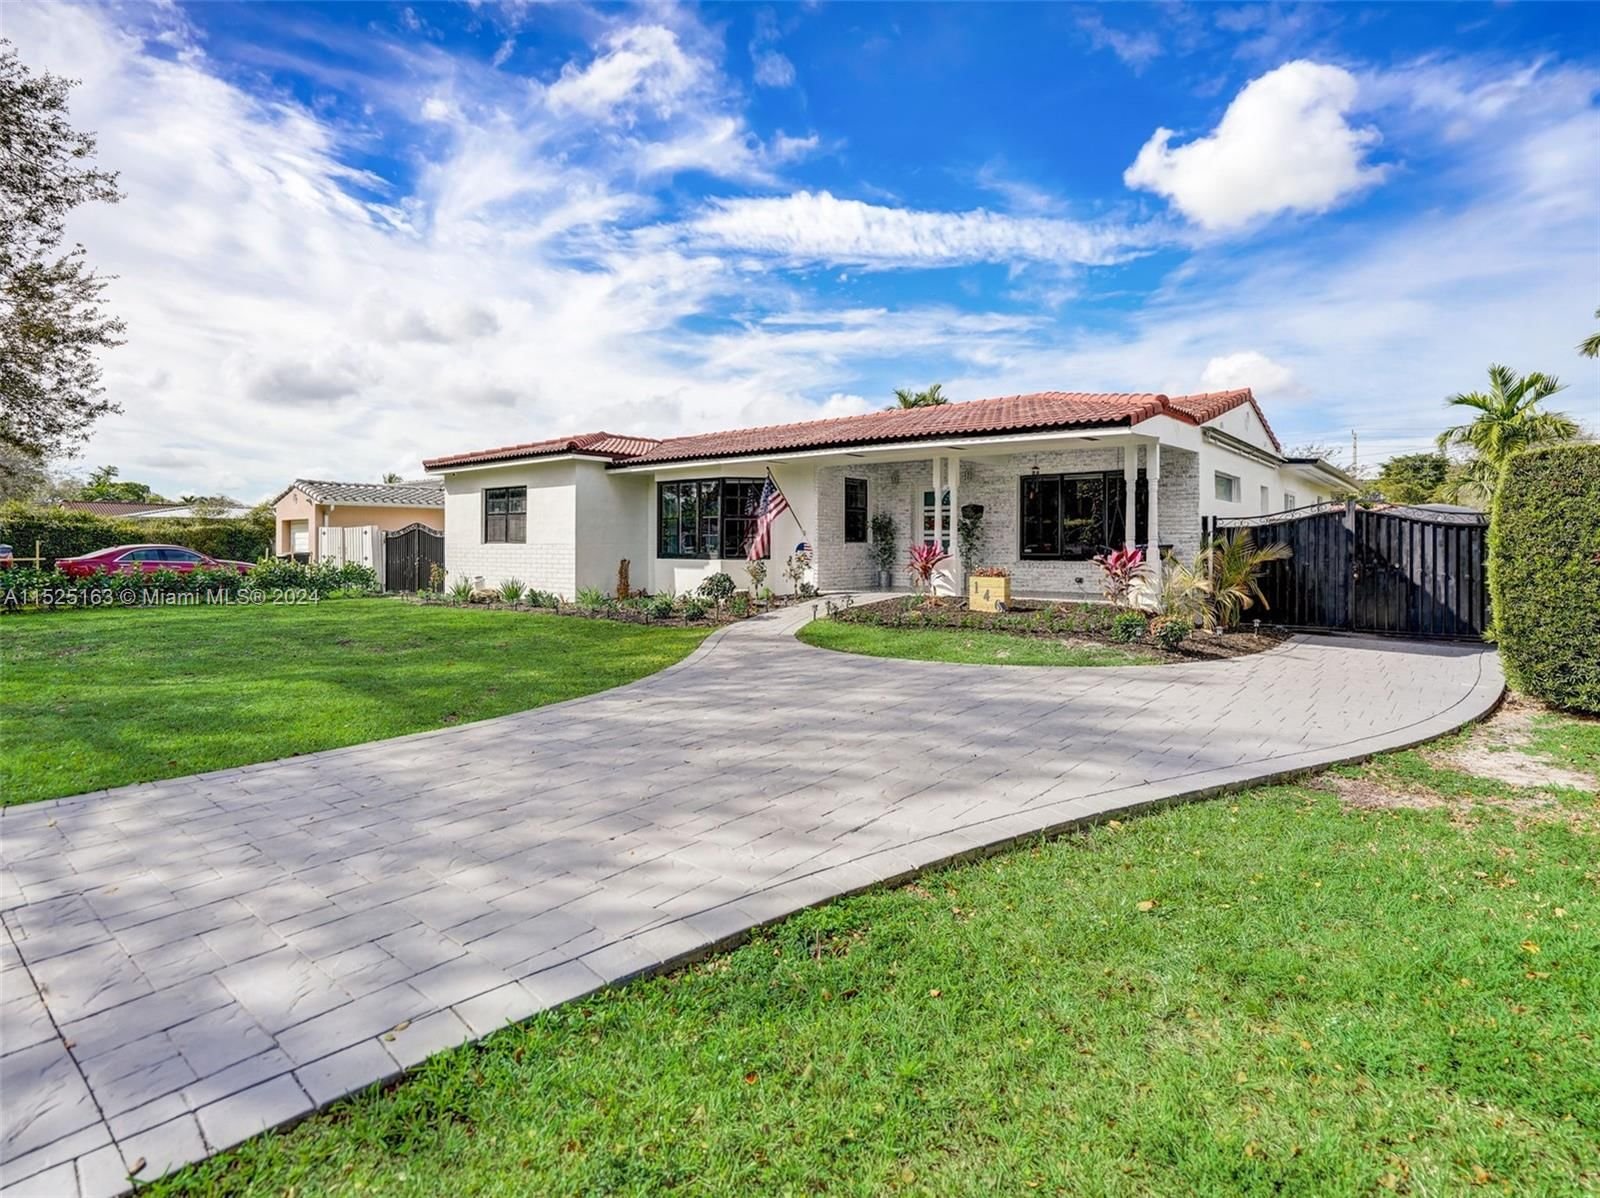 Real estate property located at 140 Pocatella St, Miami-Dade County, GOLF COURSE ADDN HIA, Miami Springs, FL